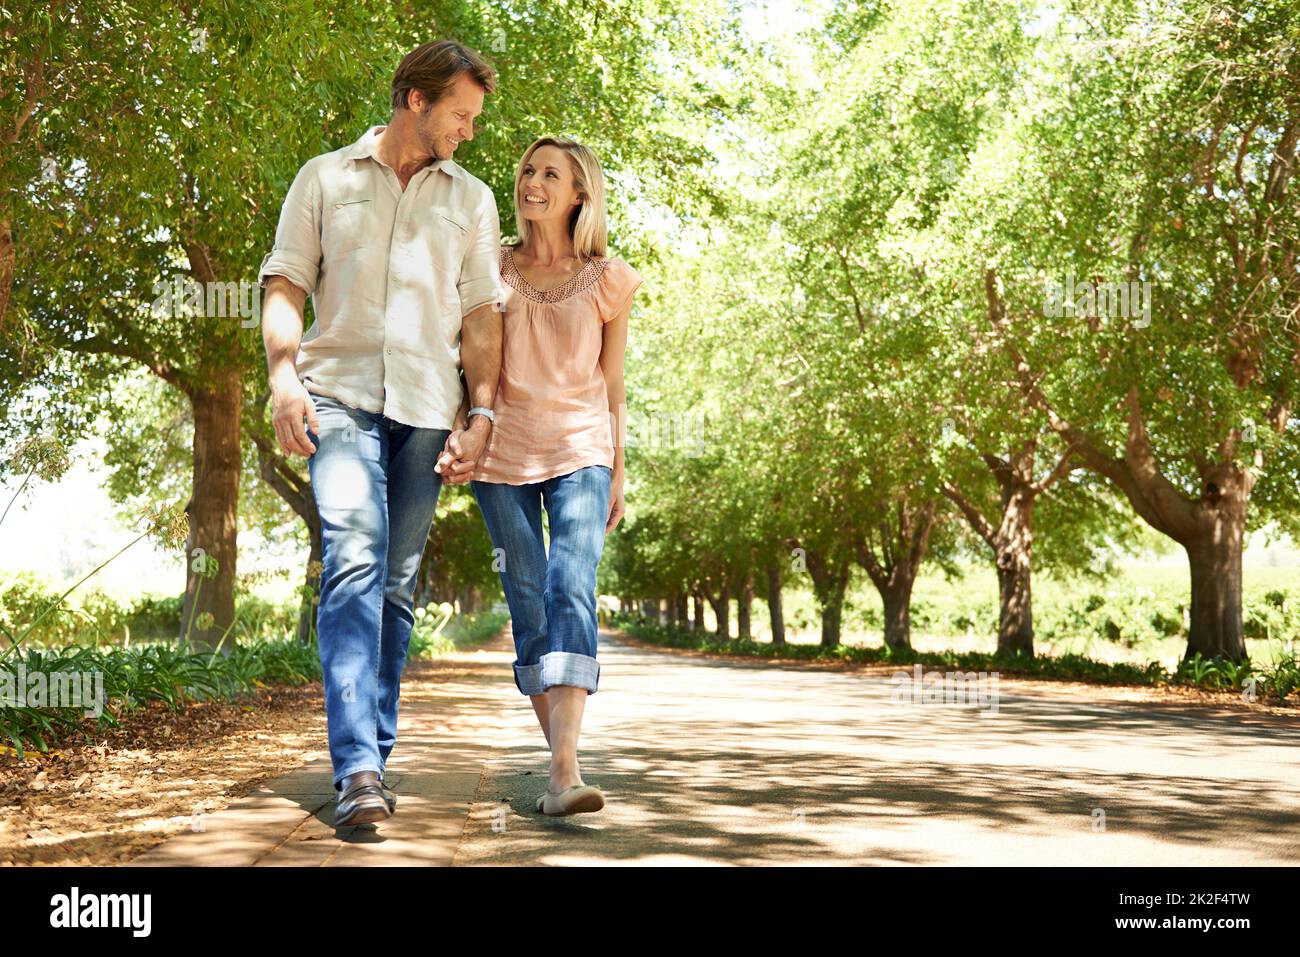 Profitez d'une promenade estivale. Photo d'un couple adulte en train de se promener dans le parc. Banque D'Images